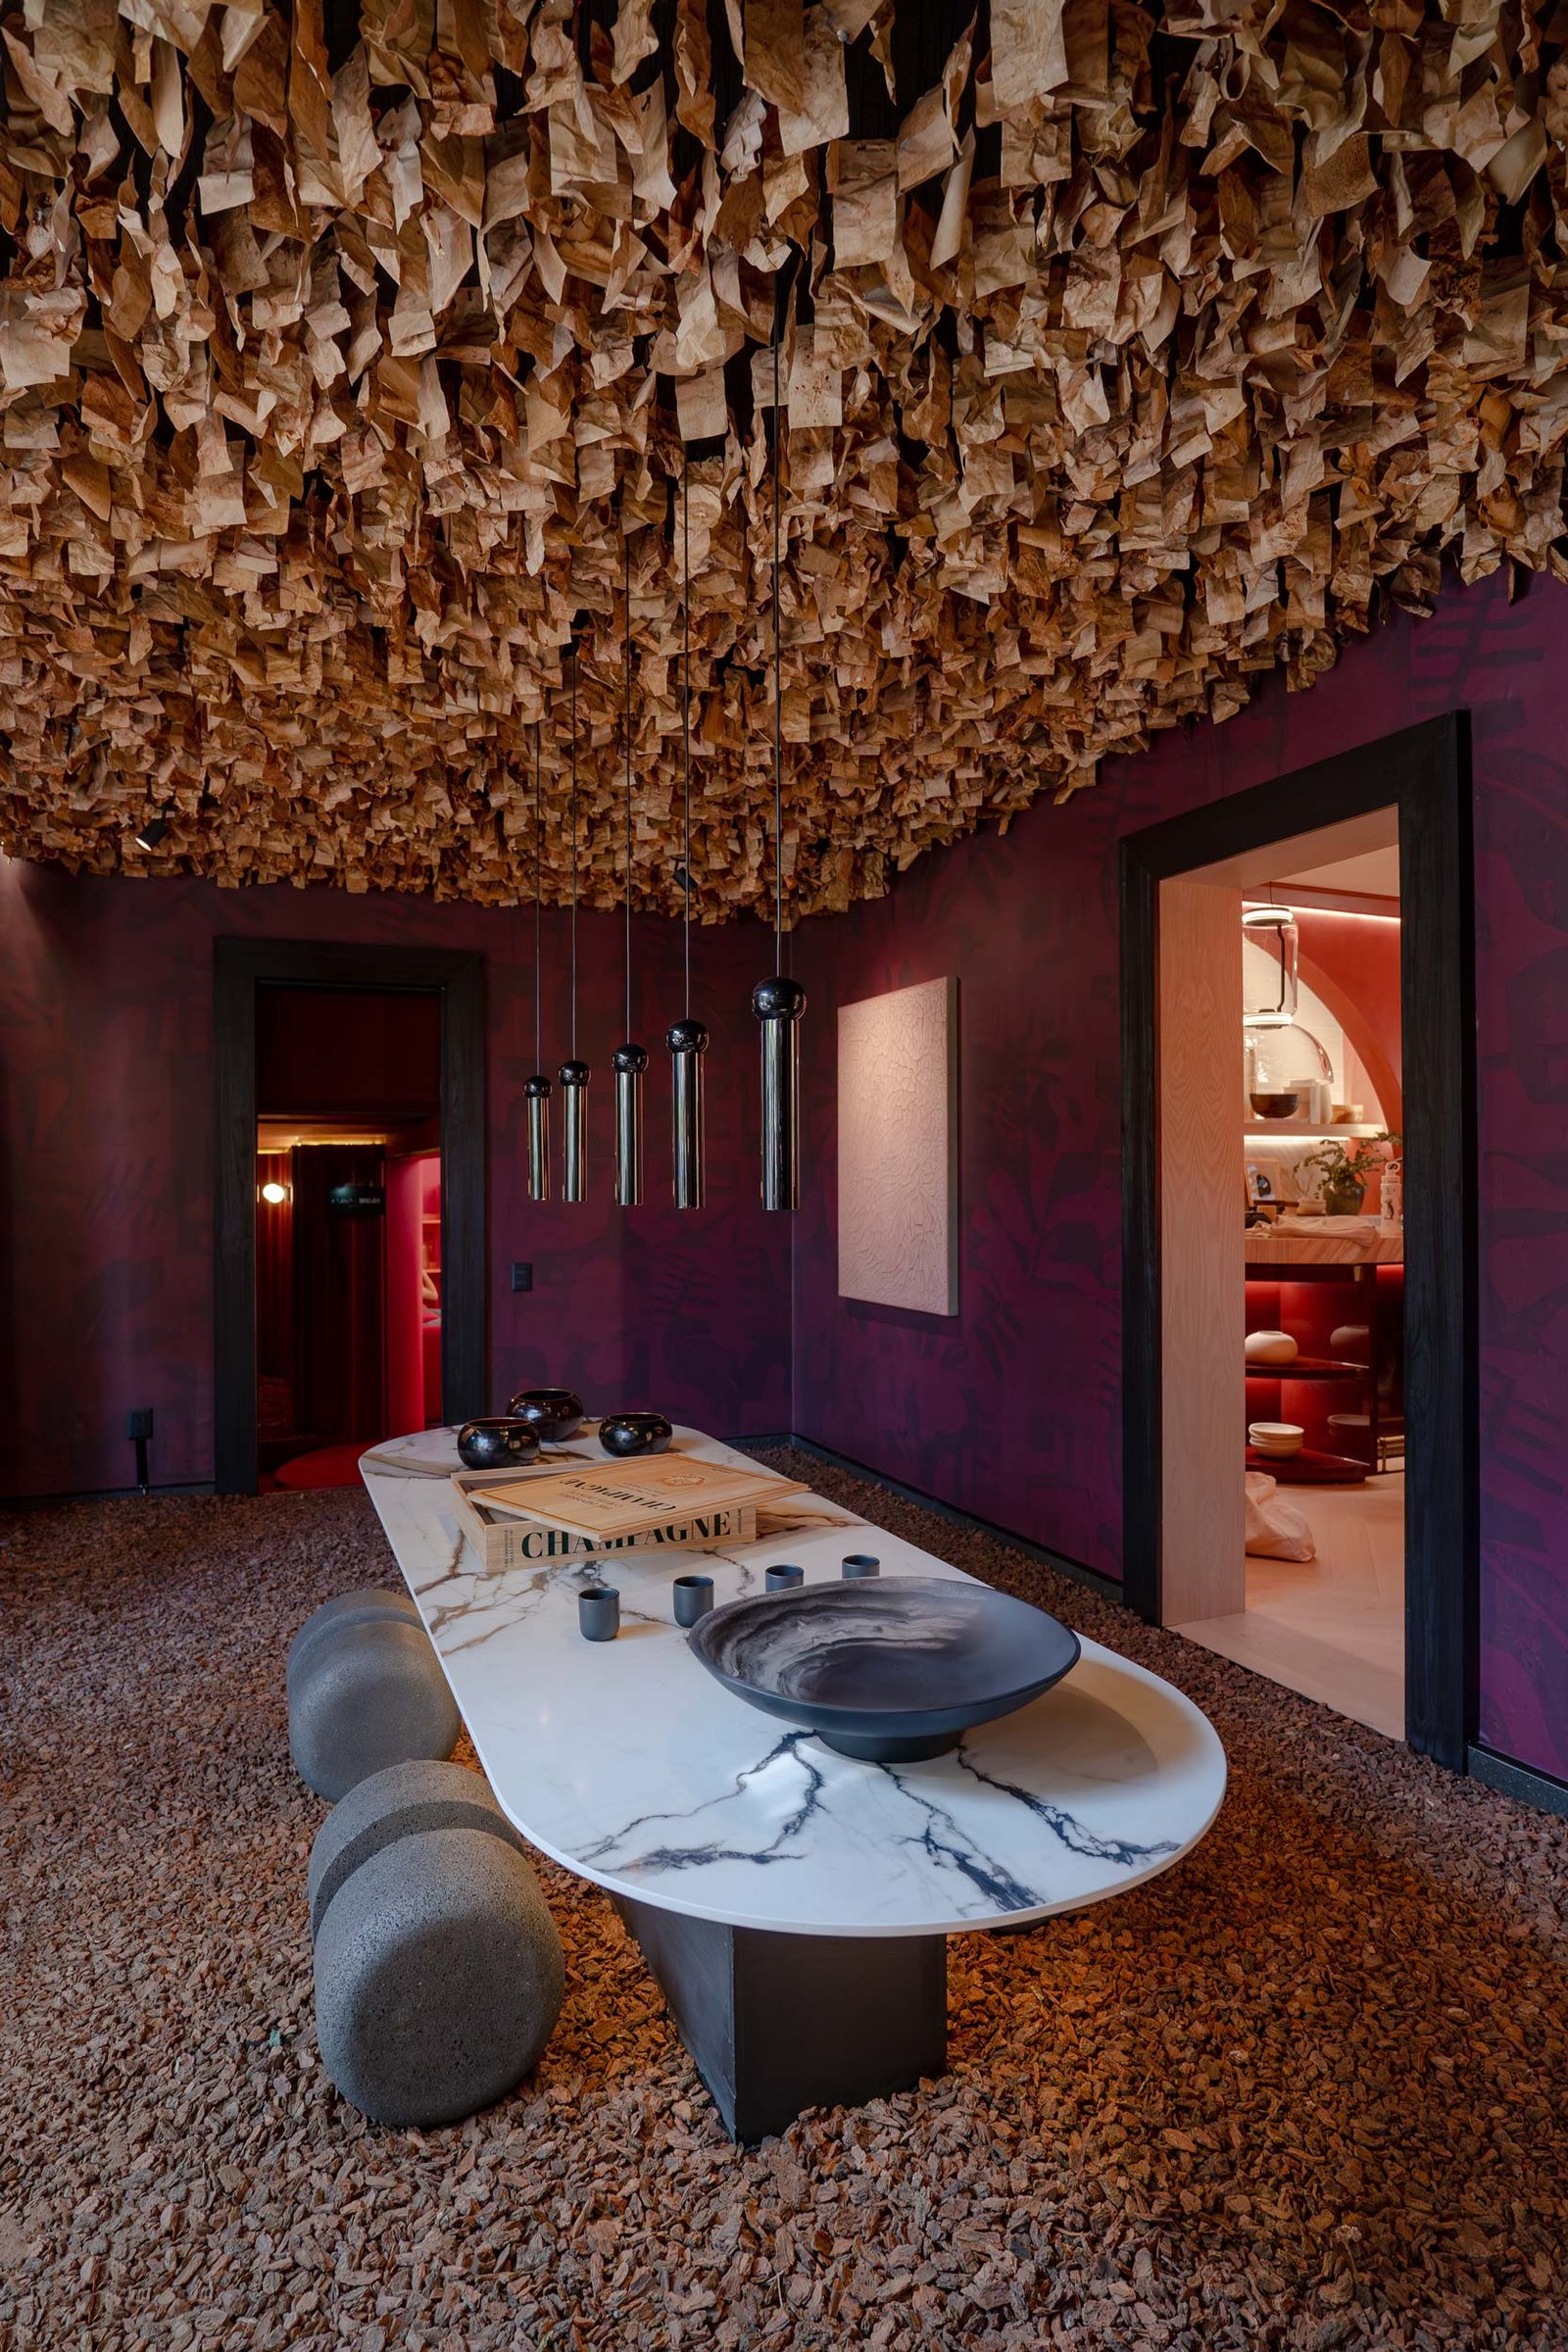 Lámparas colgantes Perla Talavera diseñadas por Bandido Studio para sala de juntas con techo de madera.